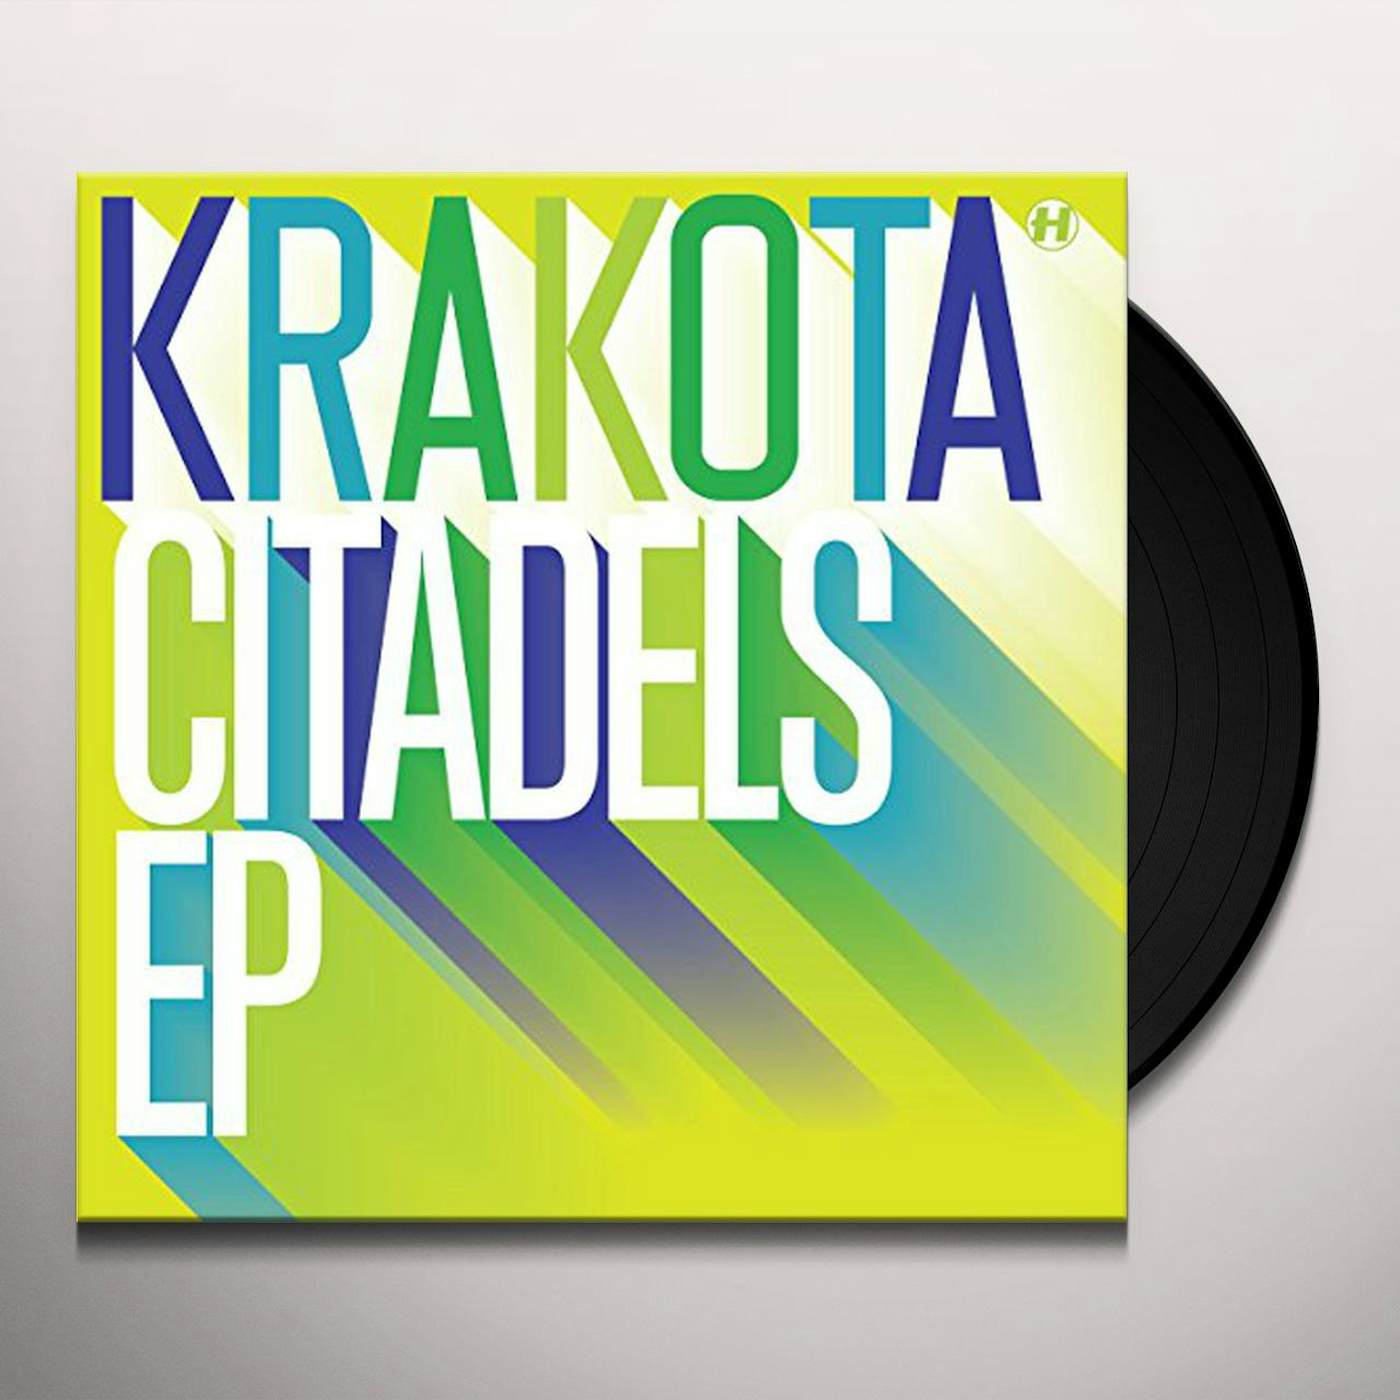 Krakota Citadels Vinyl Record